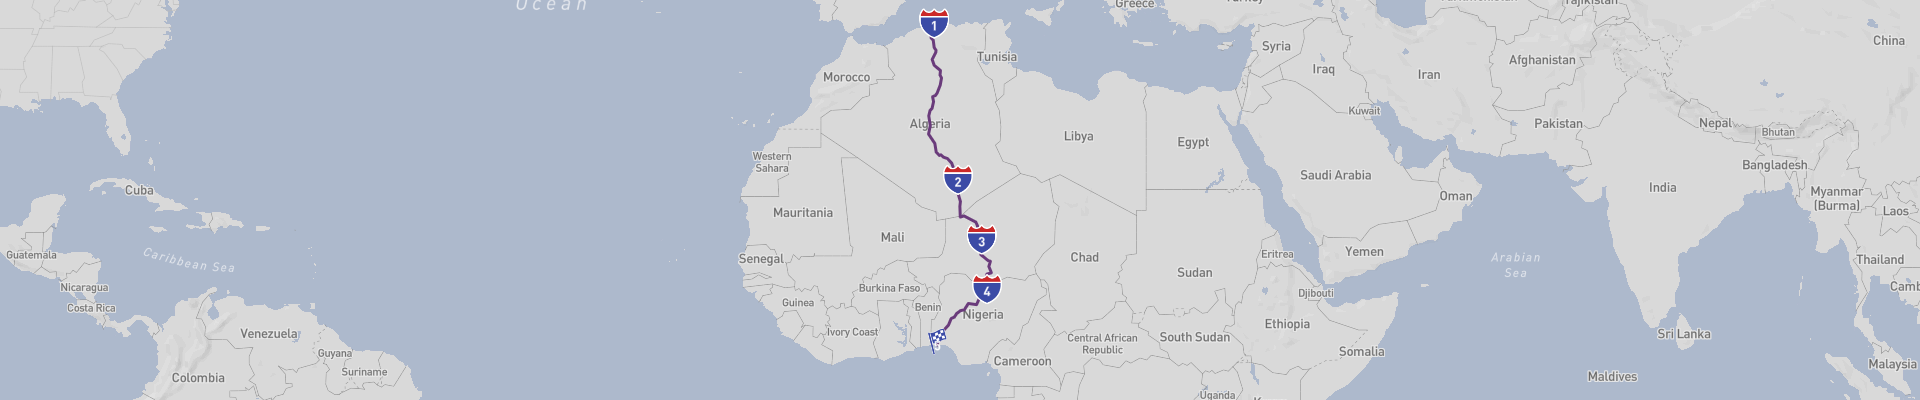 Von Algier nach Lagos Transafrikanischer Roadtrip